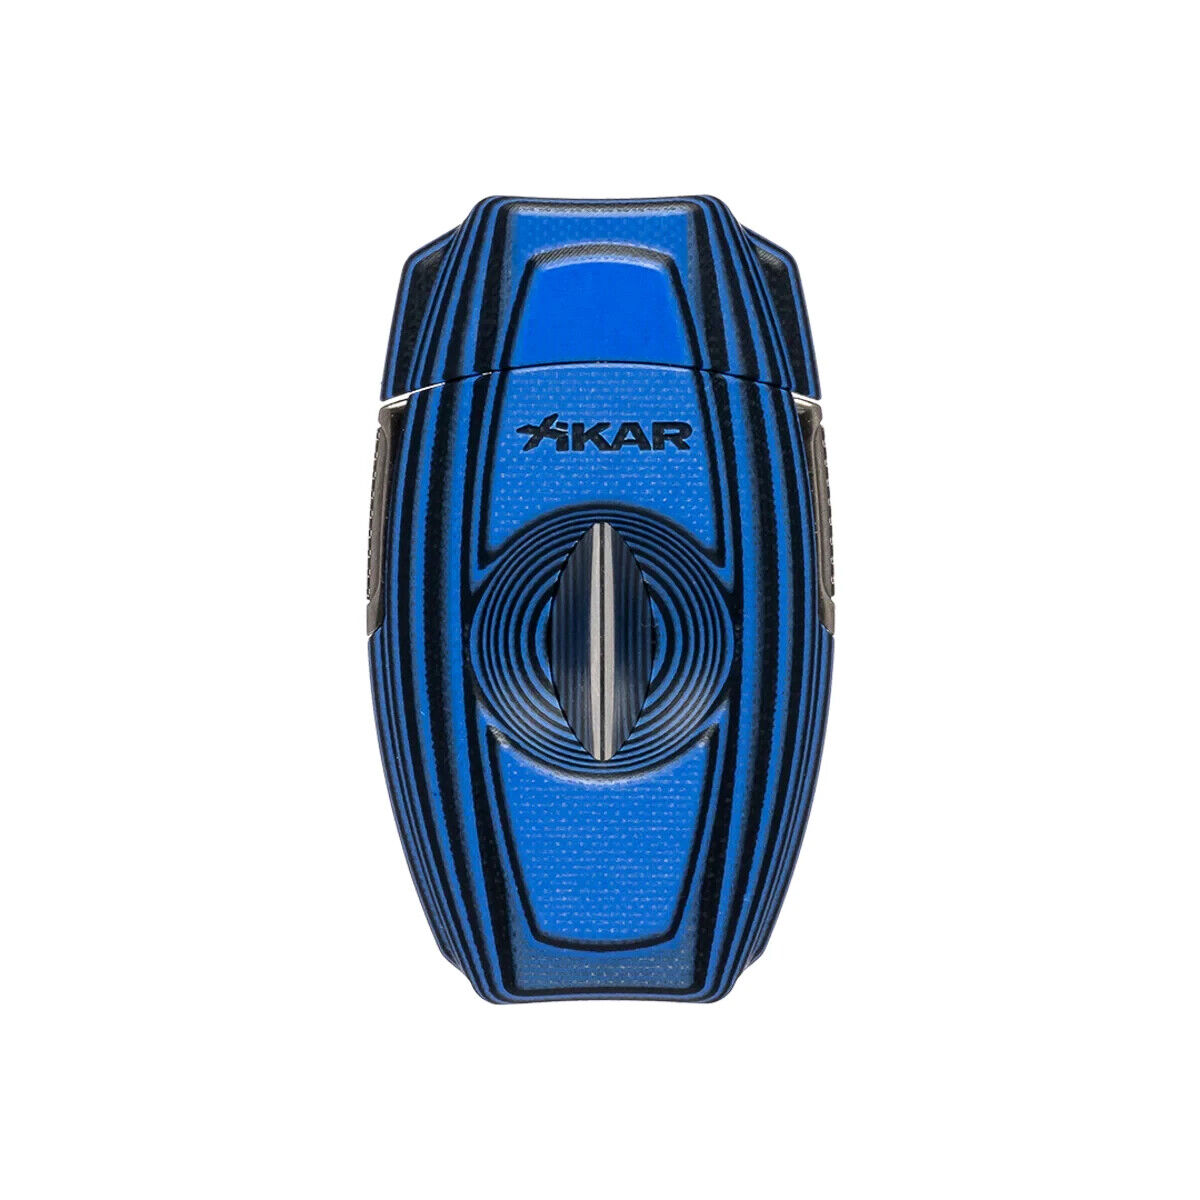 New Release - Xikar Cigar Cutter Fiber Glass Laminate G10 VX2 Blue XI-158BL